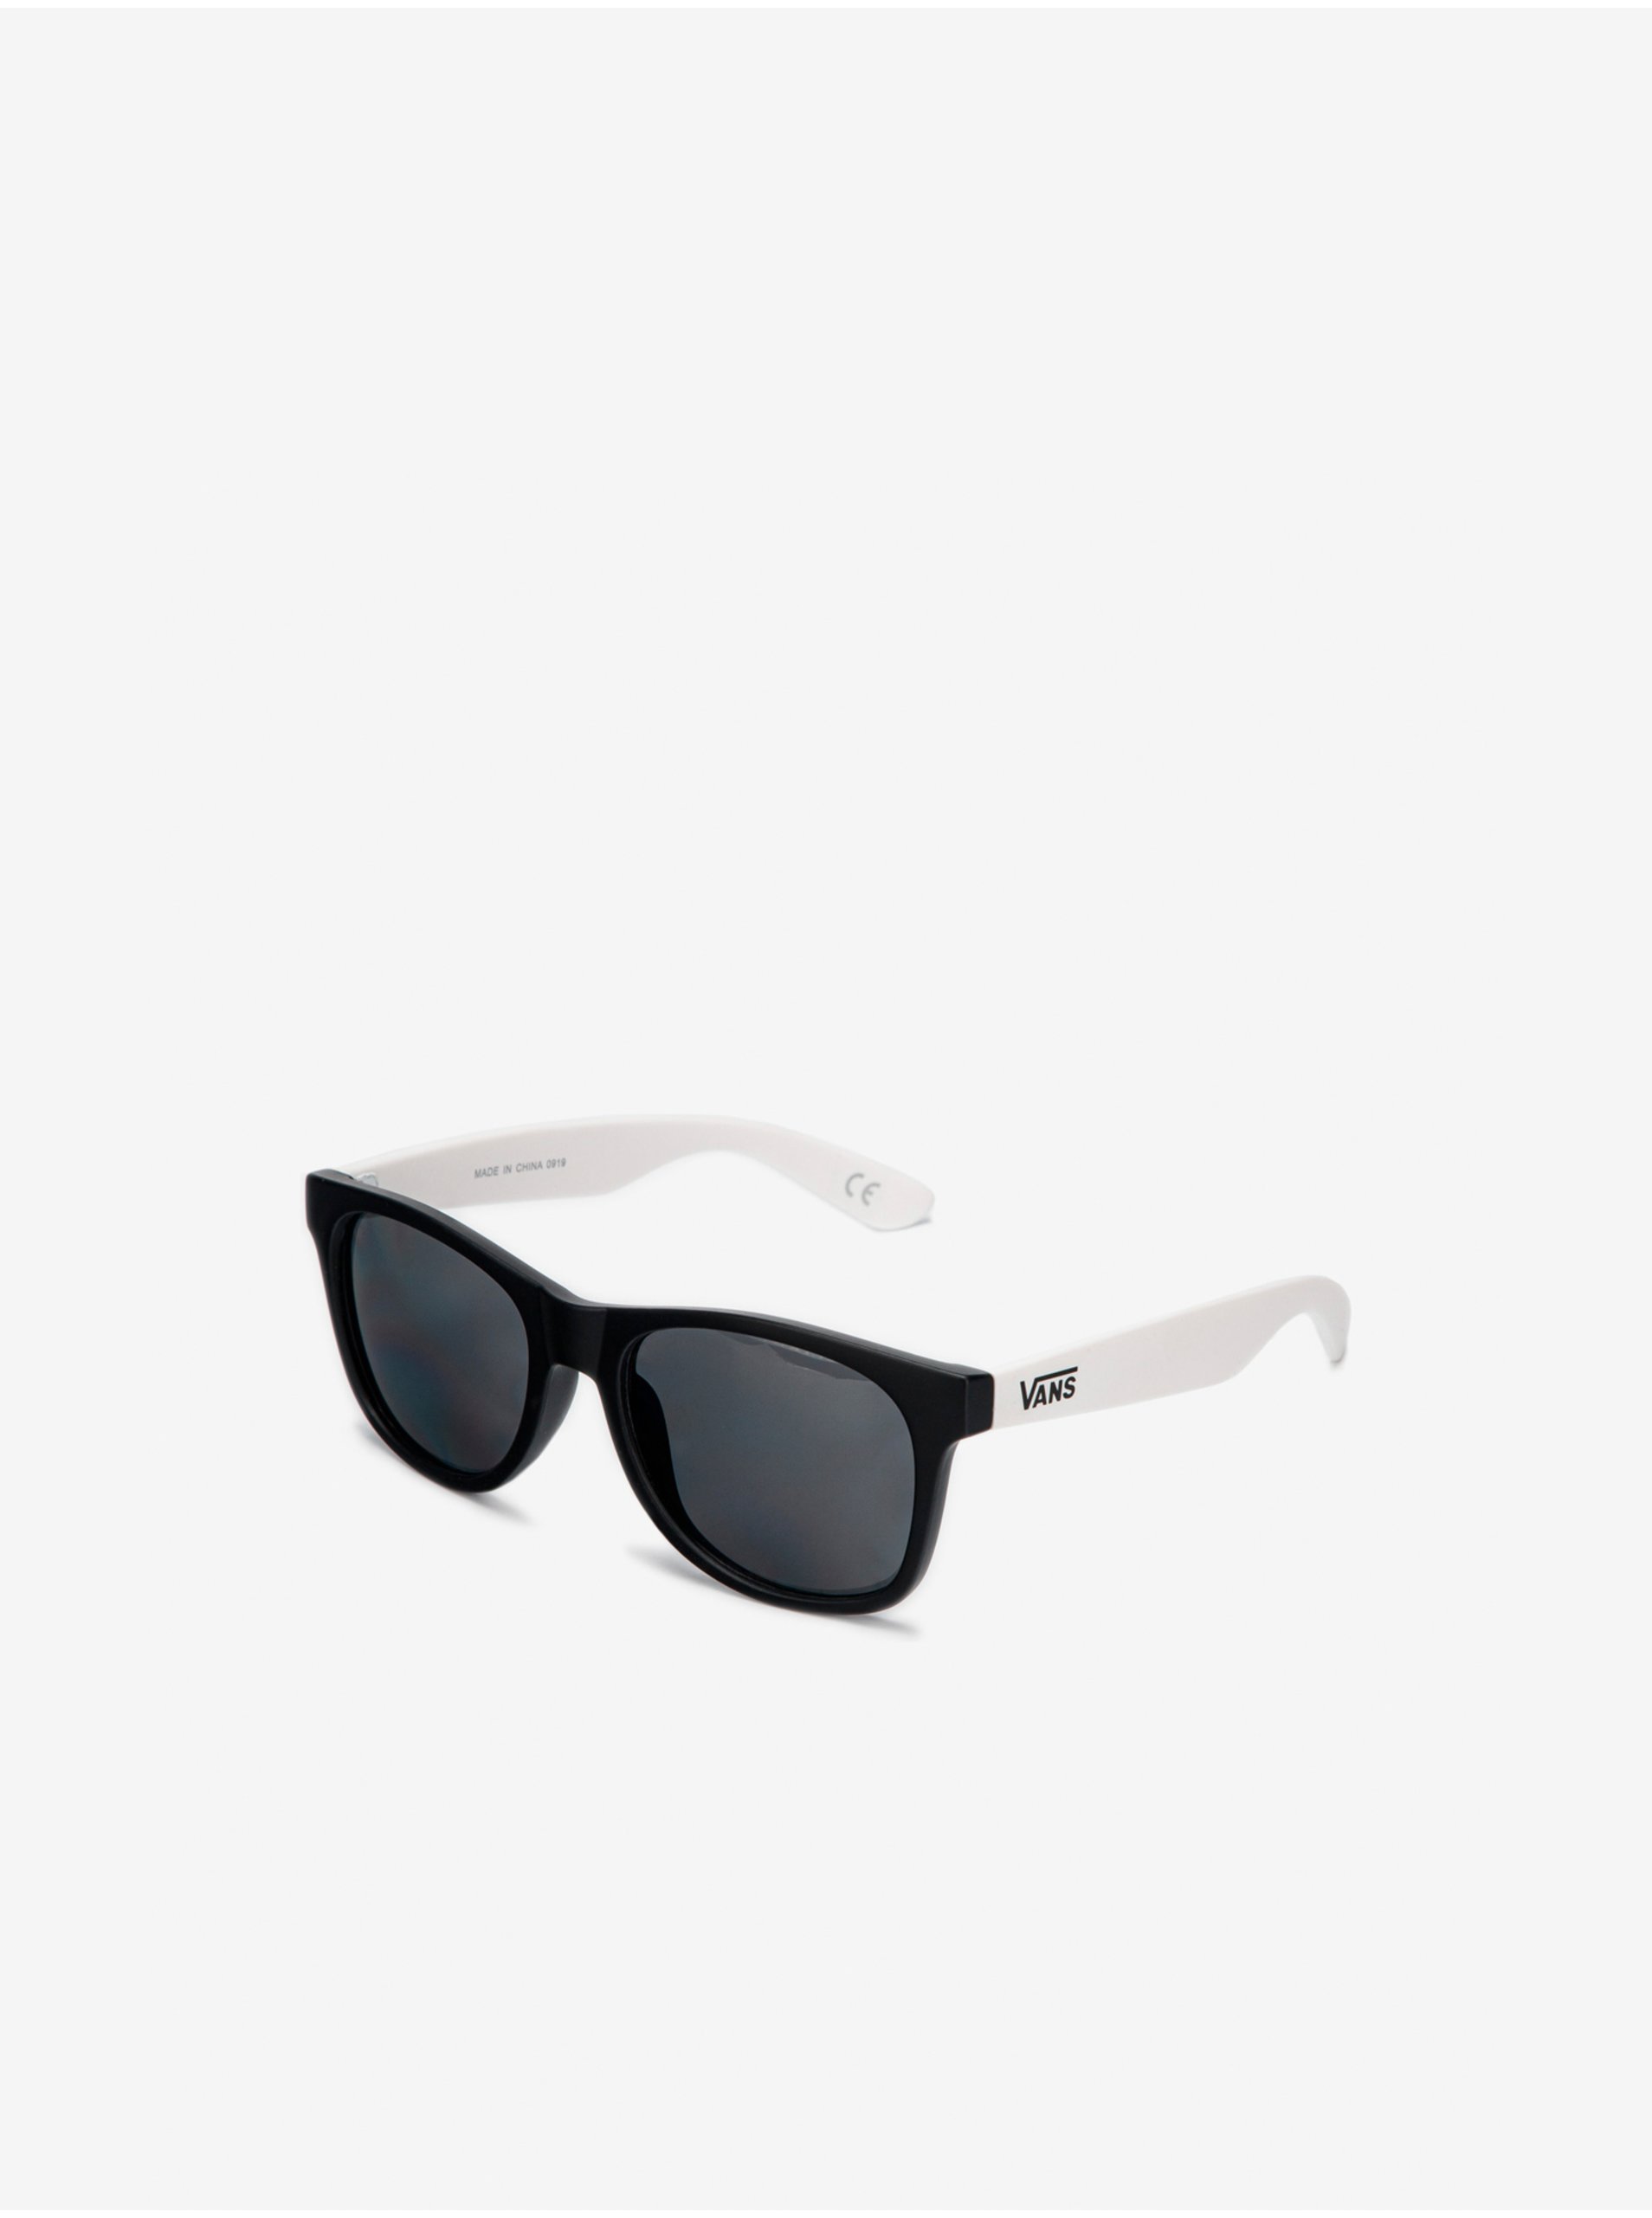 E-shop Bielo-čierne pánske slnečné okuliare VANS Spicoli 4